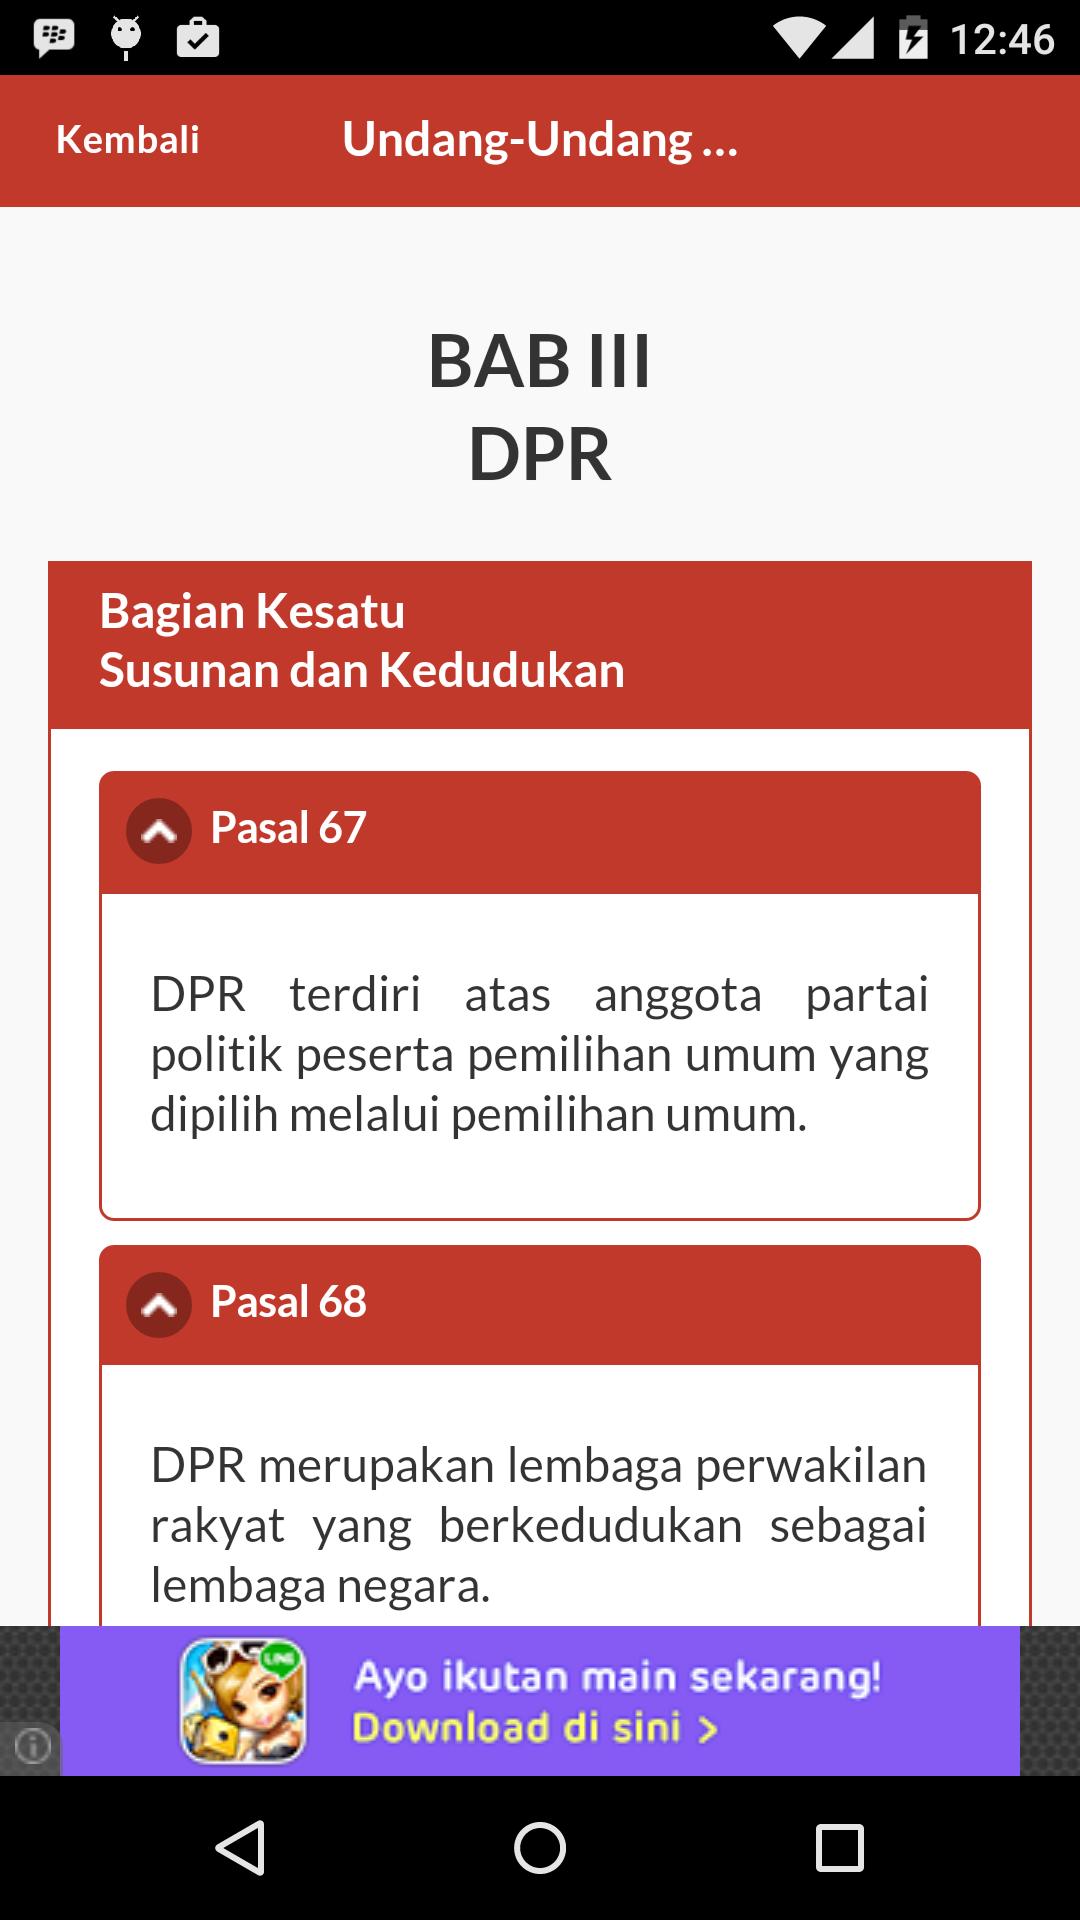 Dpr merupakan lembaga perwakilan rakyat yang berkedudukan sebagai lembaga